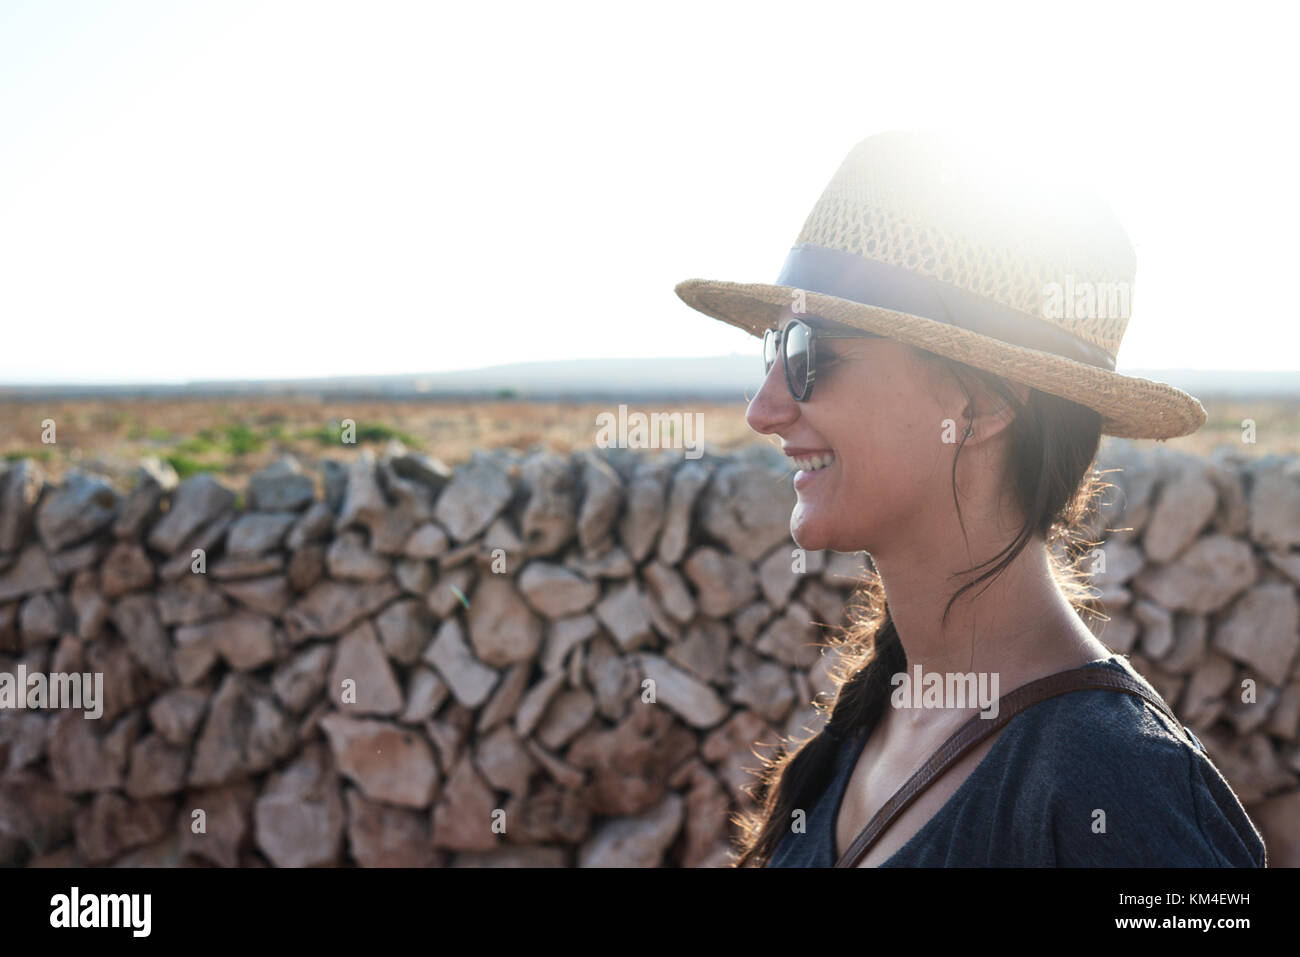 Menorca, Espagne, heureux joli portrait voyageur solo dans un vide, l'île de Minorque, solo traveler Banque D'Images